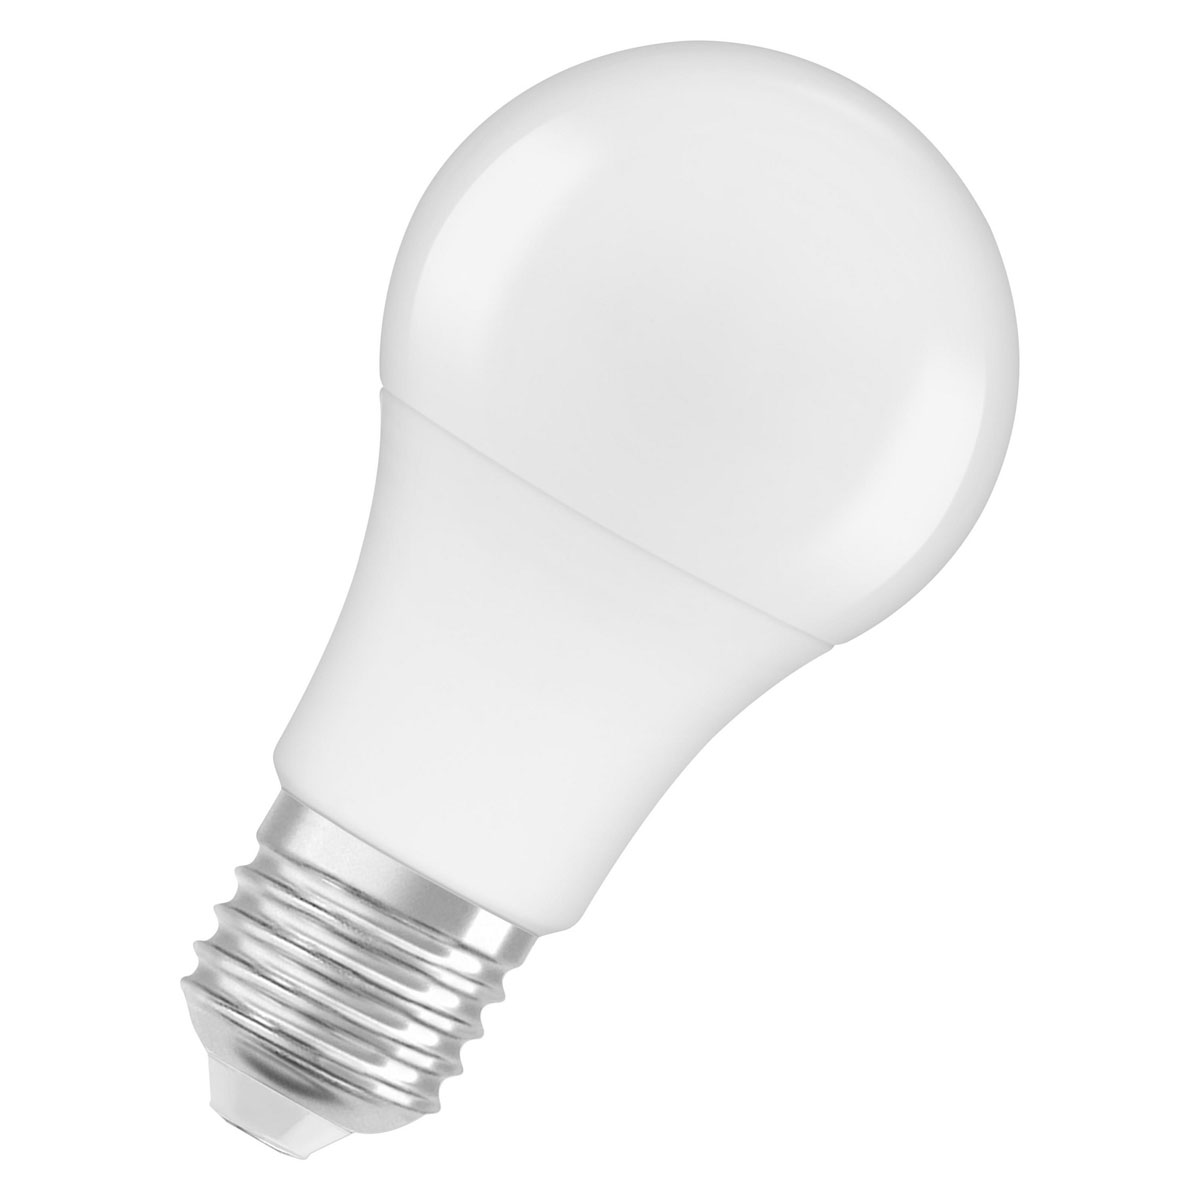 LED-Glühlampe, E27, warmweiß, 60W, A+, 3er Pack